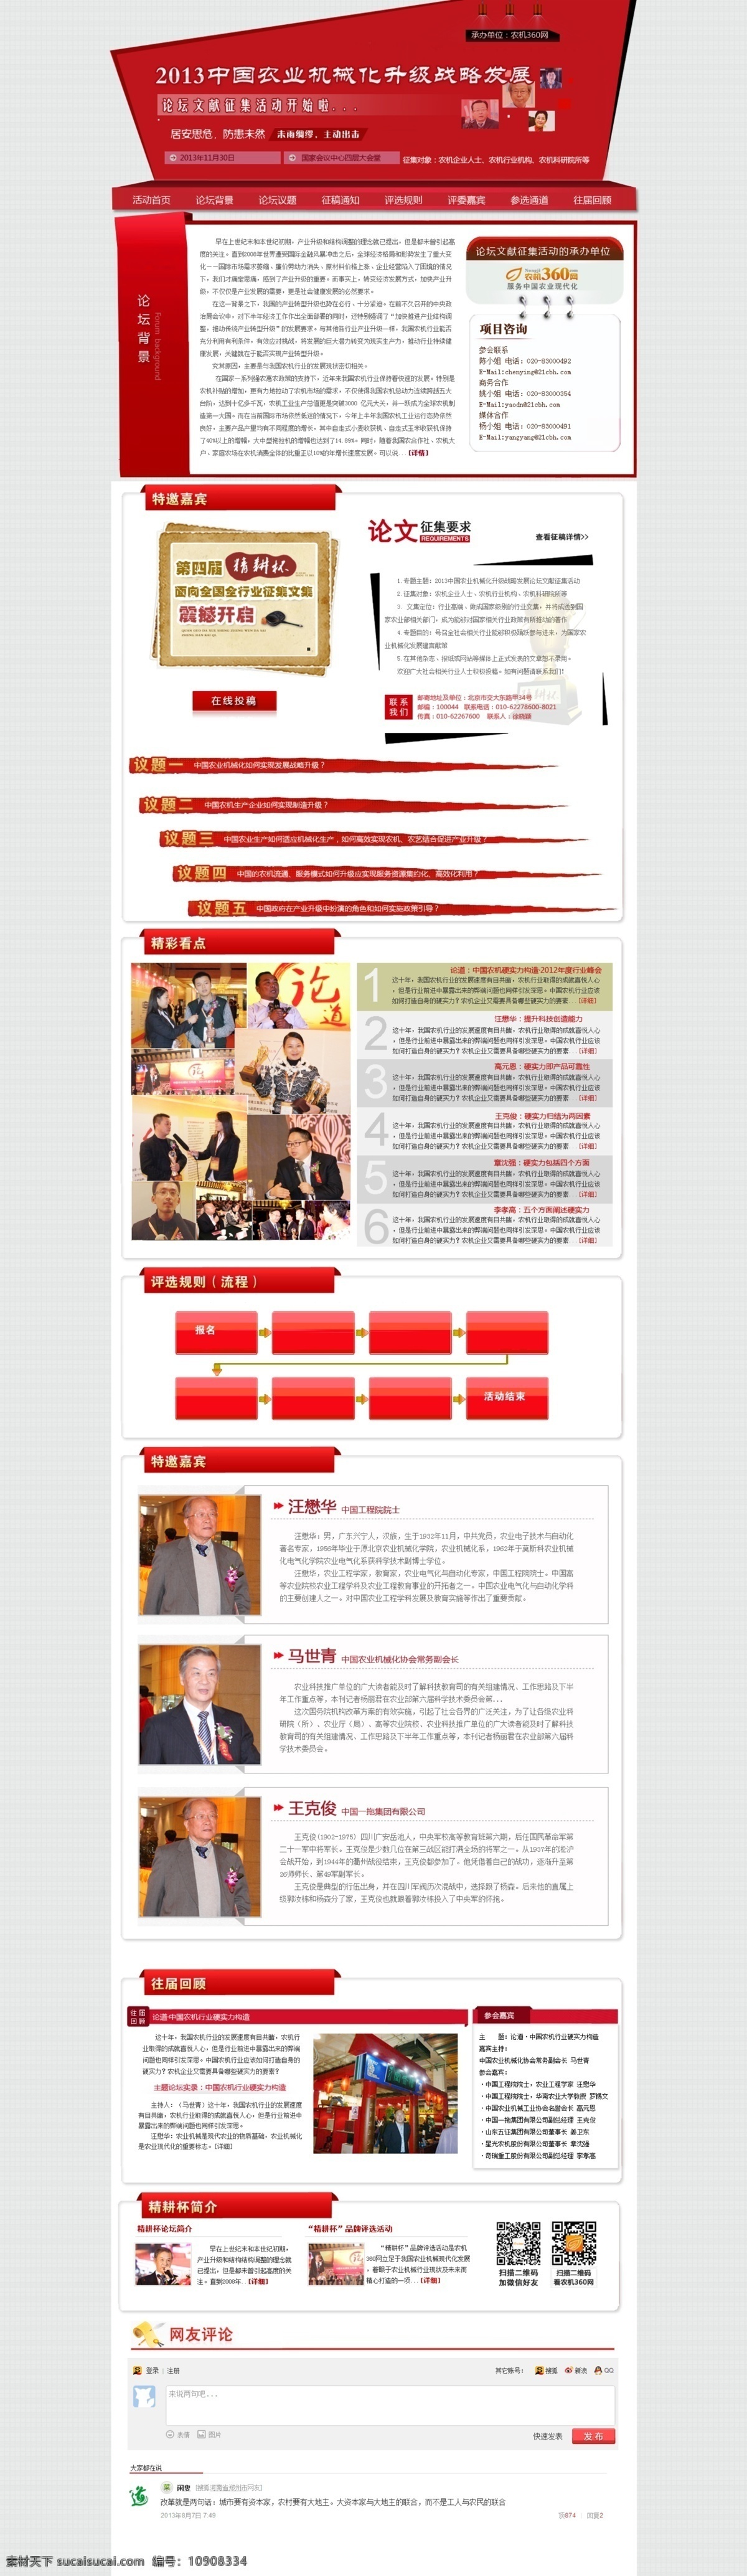 论文 网页模板 源文件 征集 征文 中文模板 专题素材 专题 红色 版 模板下载 红色版 网页素材